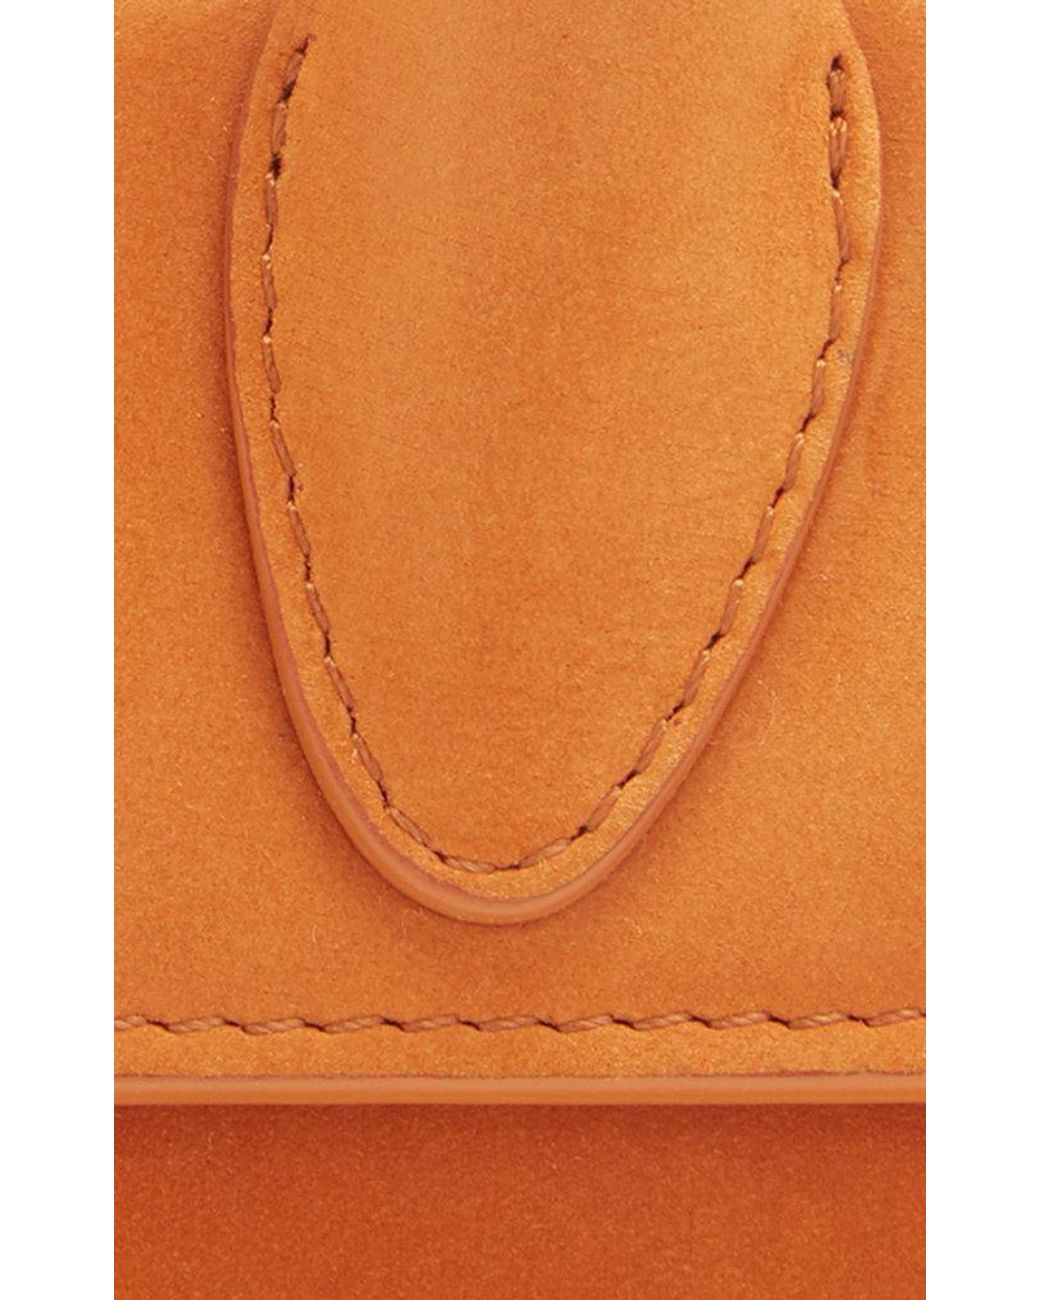 Jacquemus 'Le Chiquito Long Corado' Shoulder Bag - Orange - ShopStyle